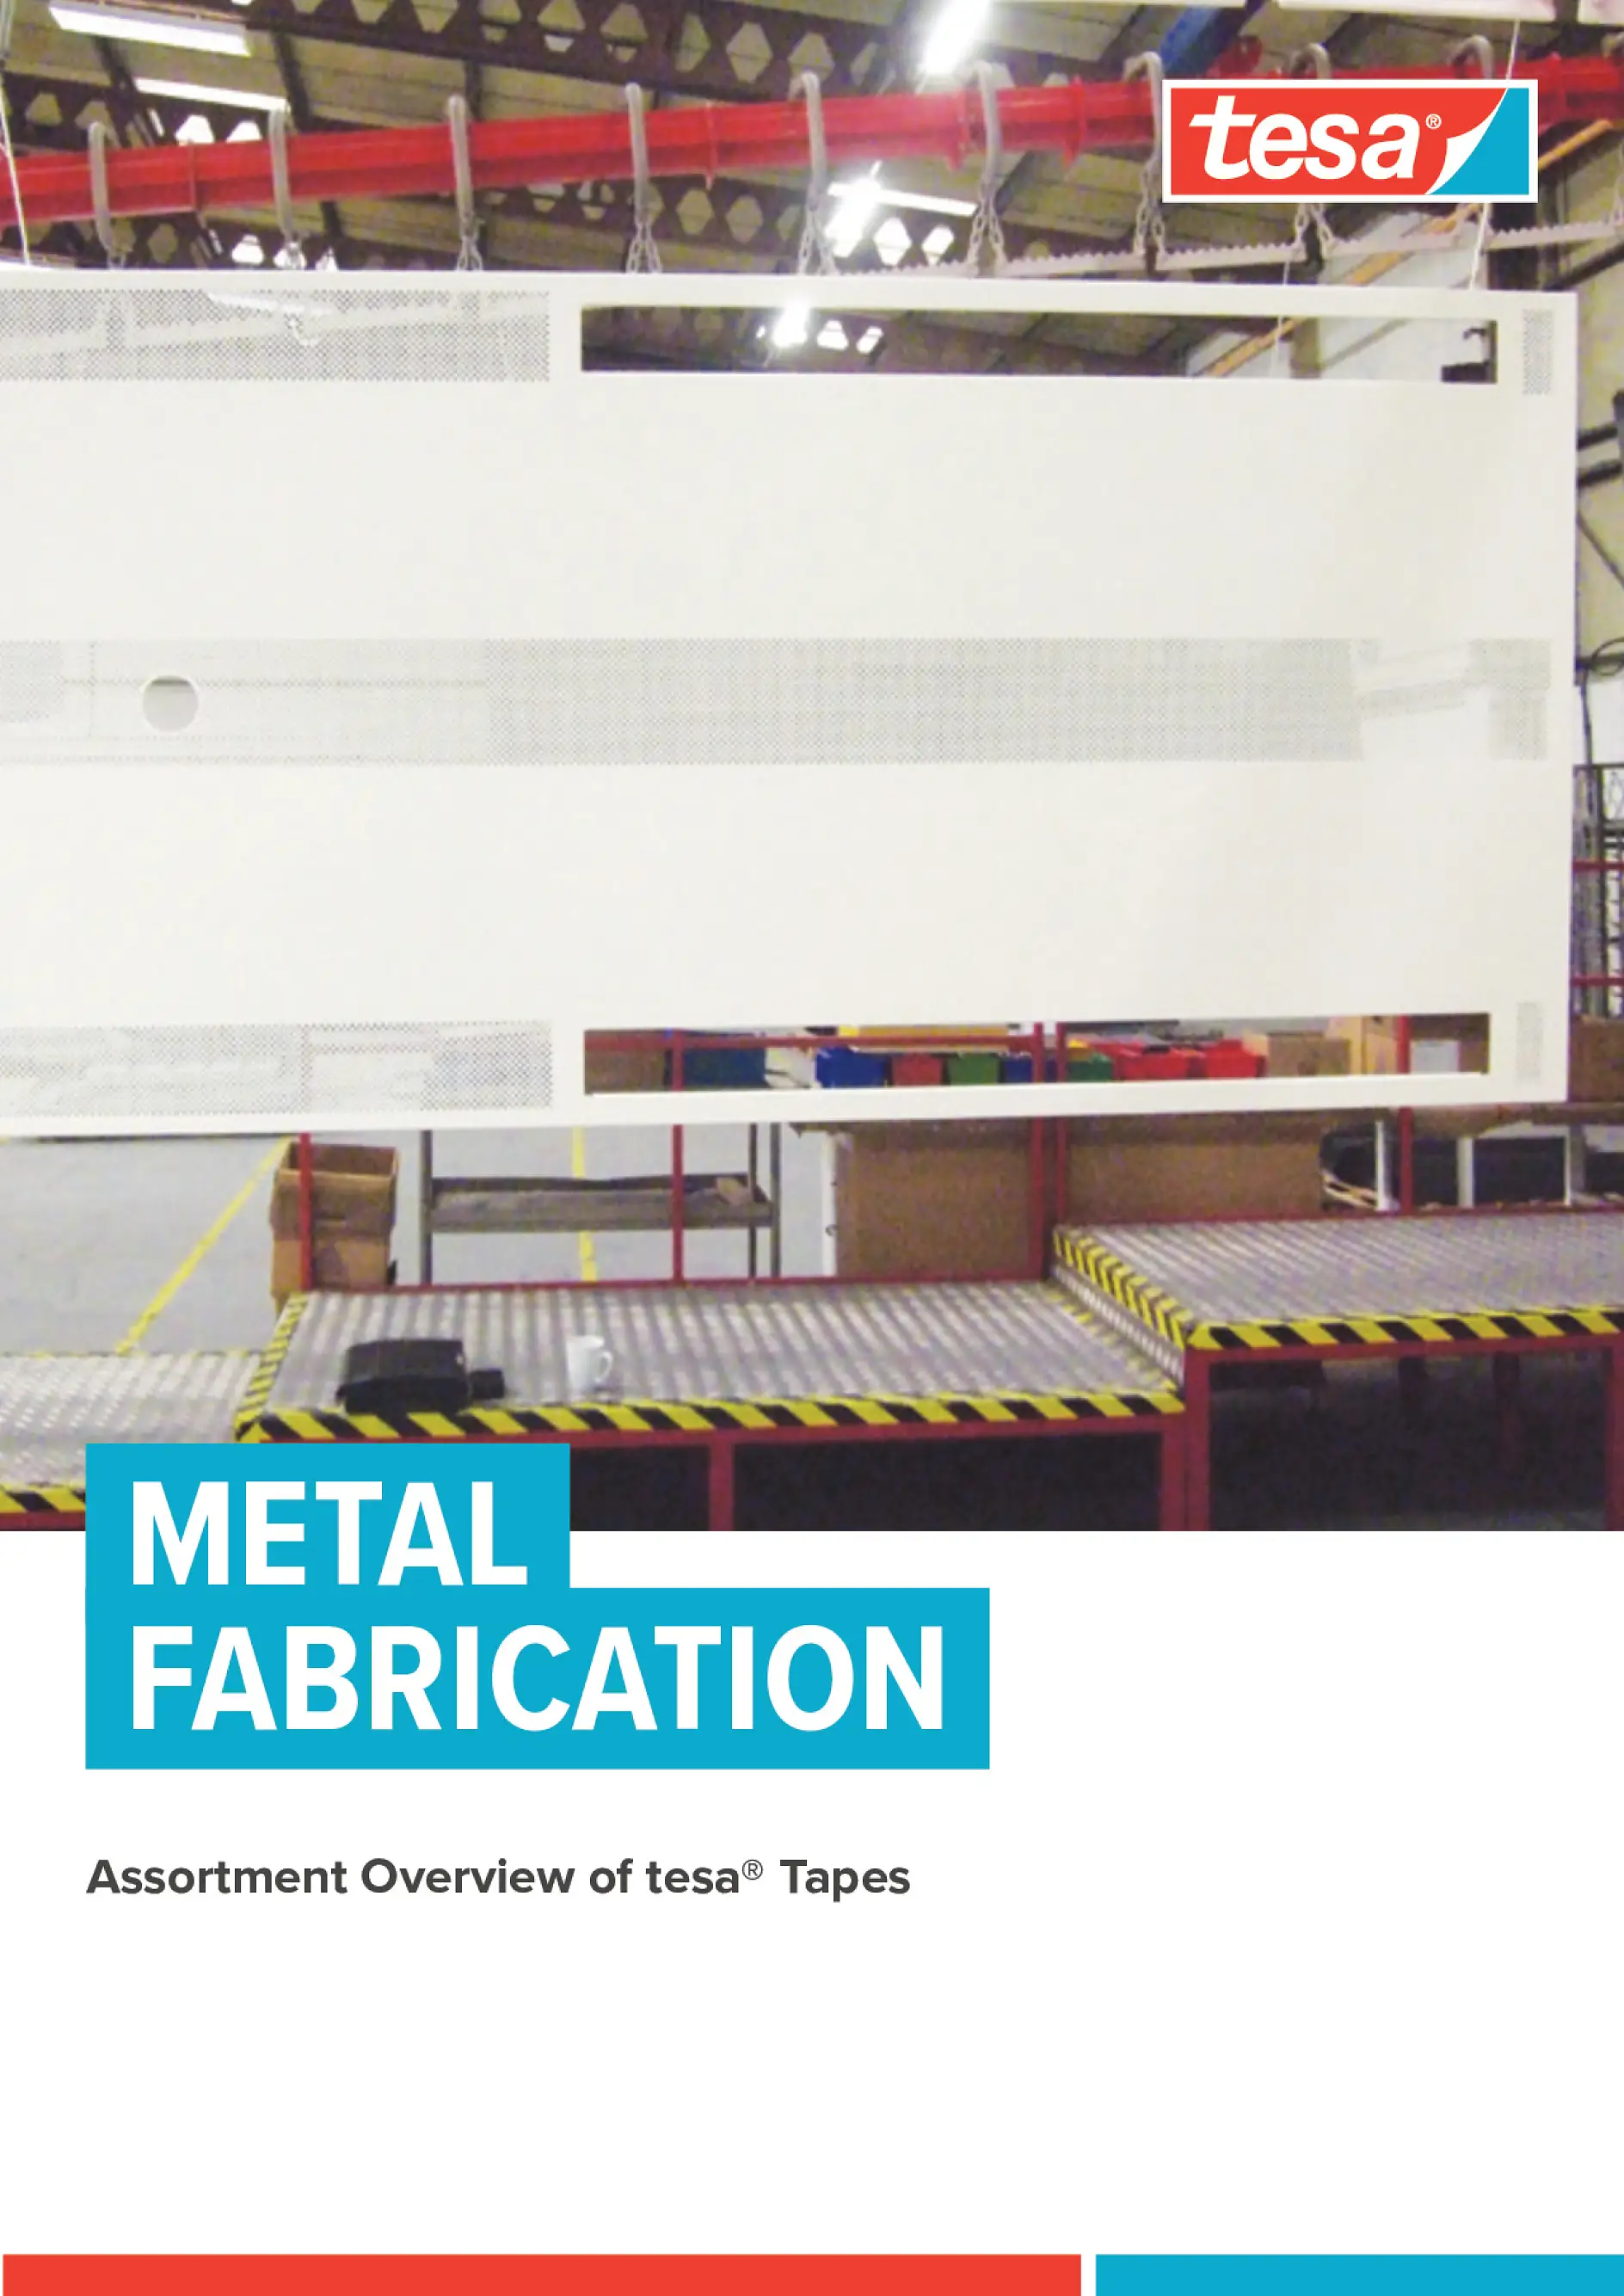 tesa-Metal-Fabrication-Leaflet